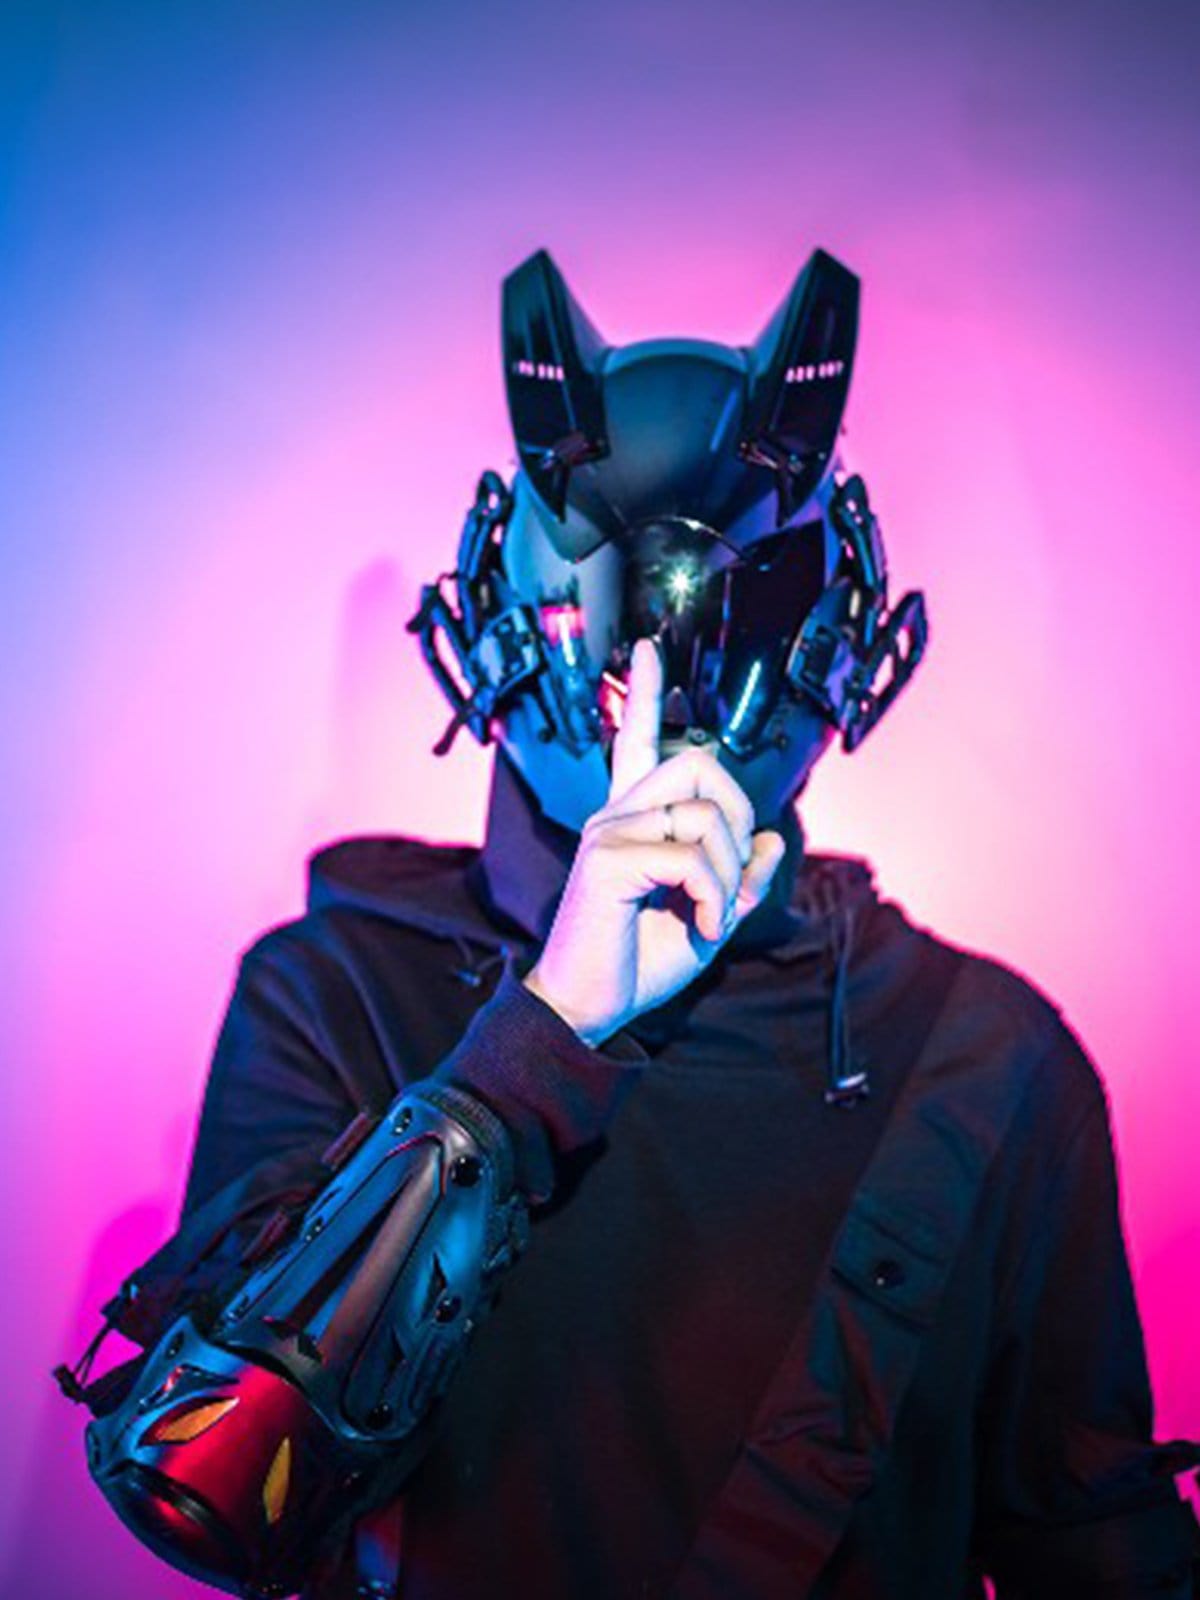 Cyberpunk Skywalker Mask